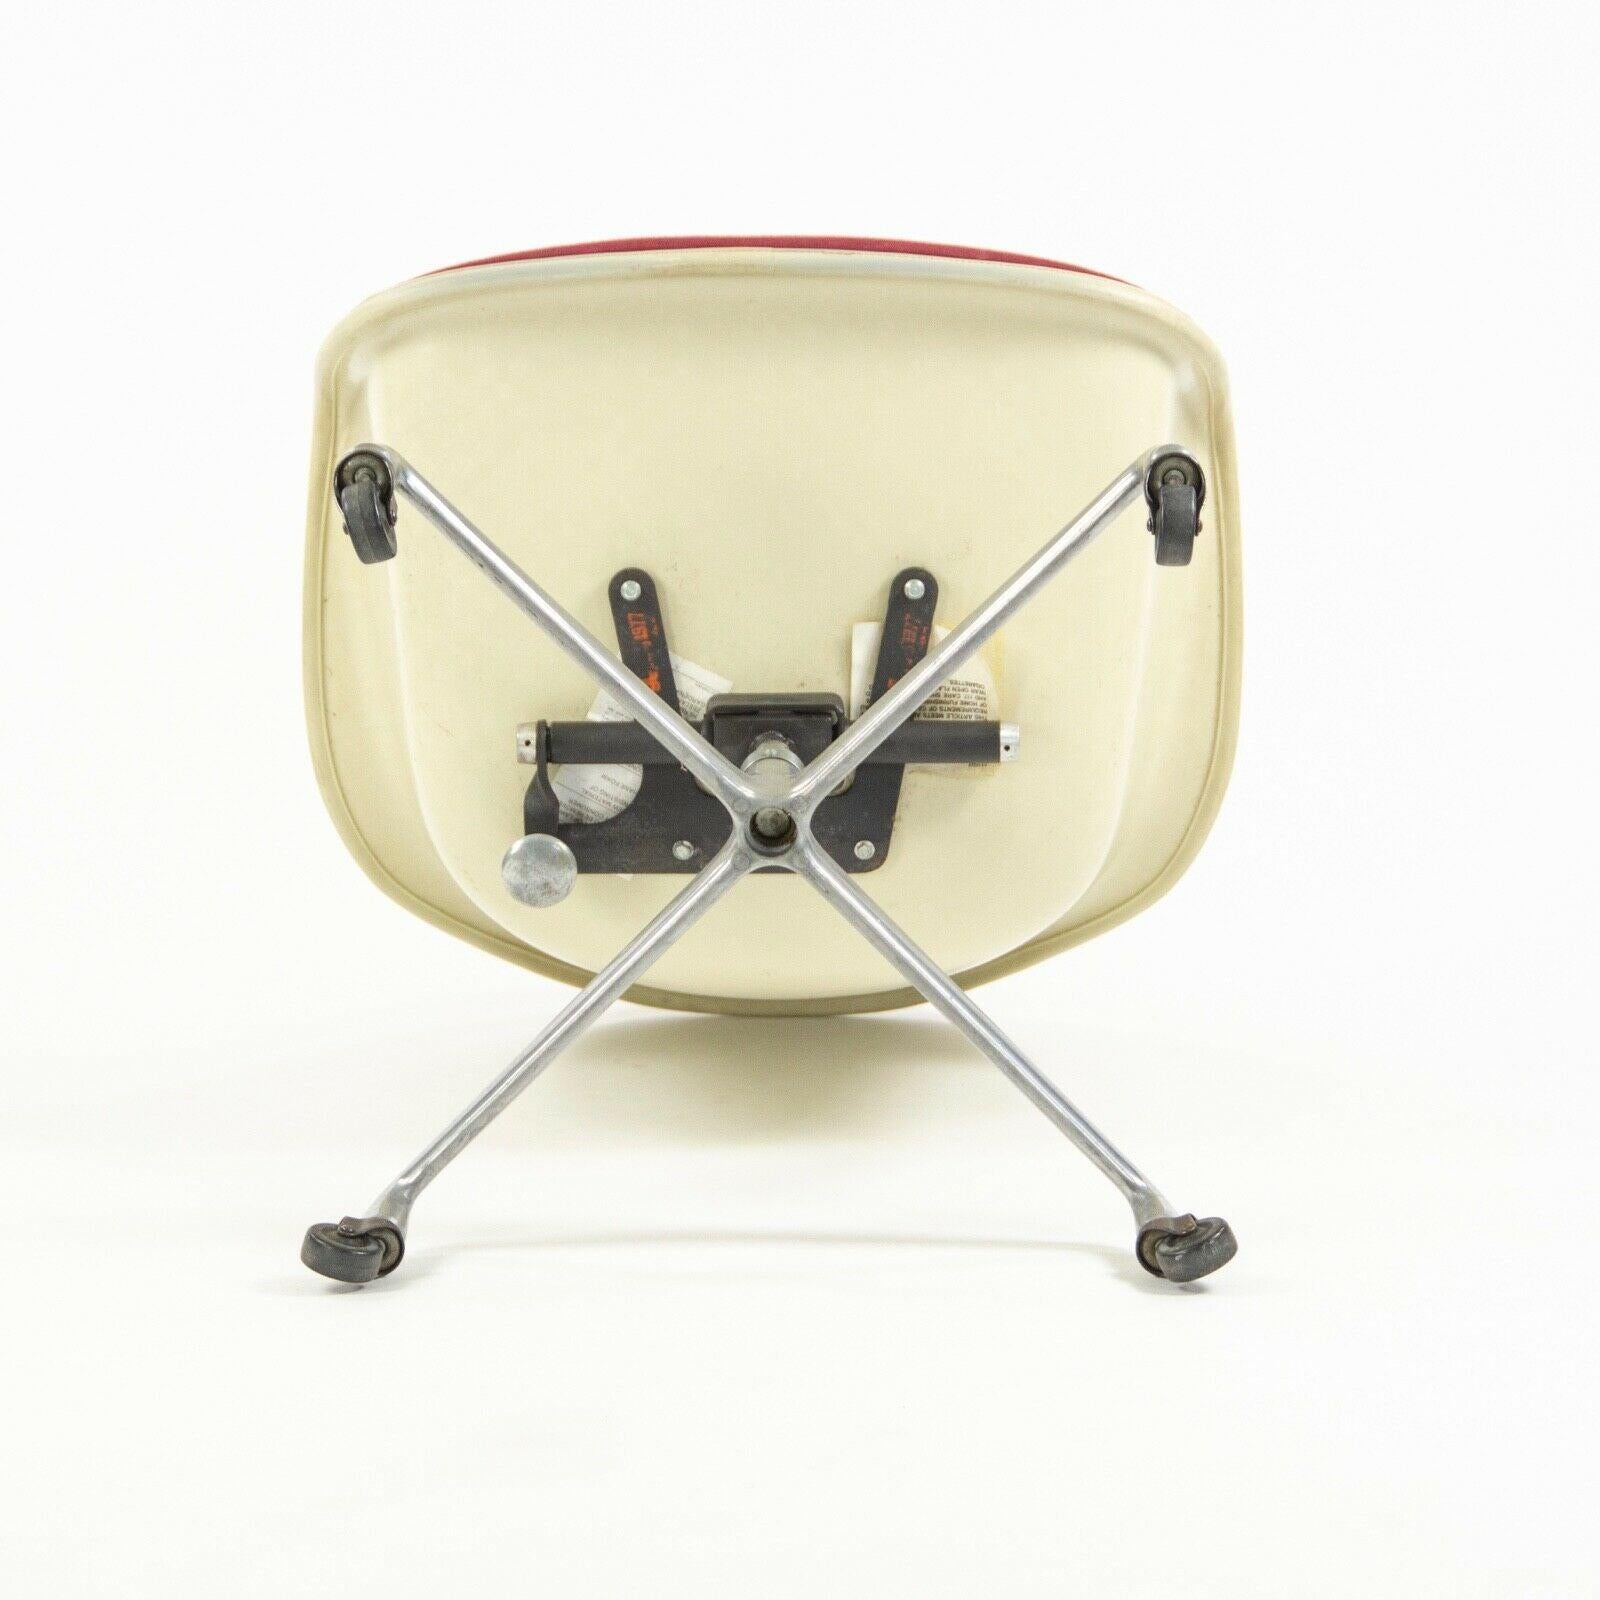 Fabric 1977 Eames Herman Miller EC175 Upholstered Fiberglass Shell Chair For Sale